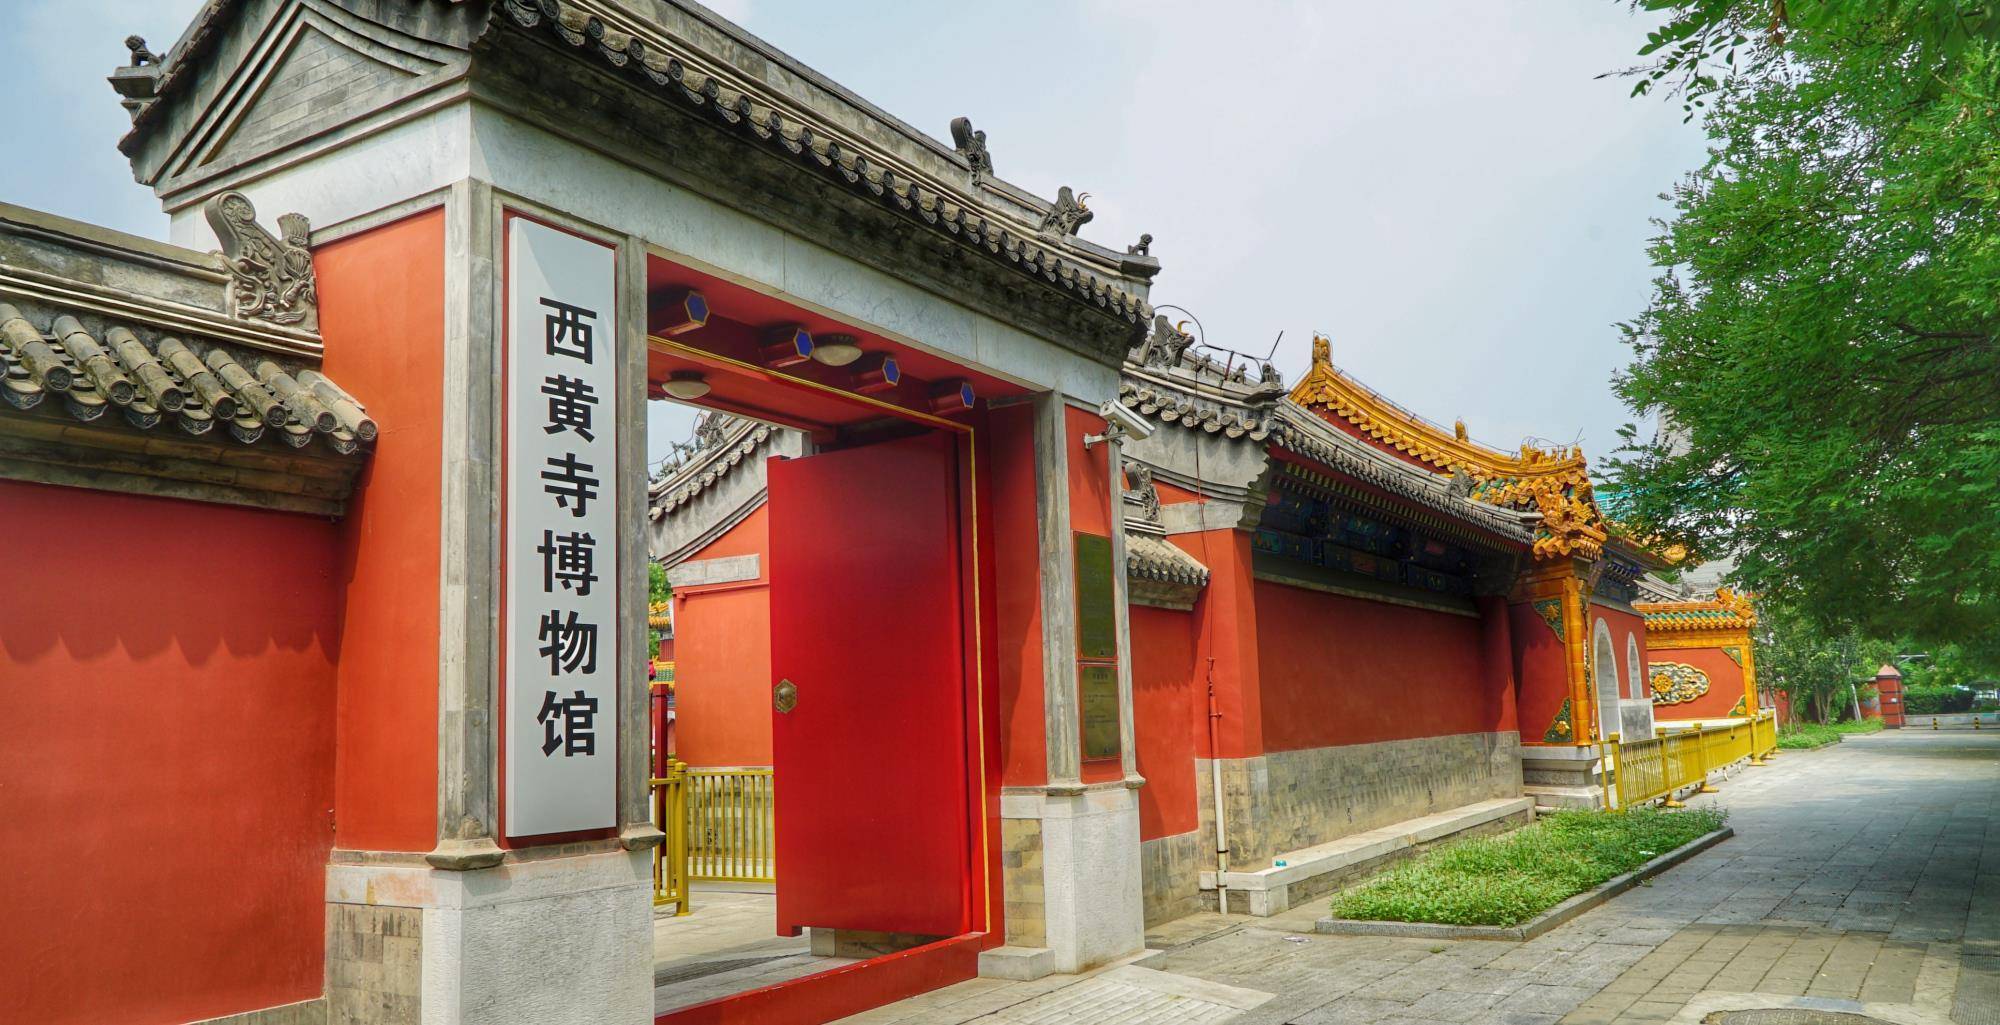 可以从北京地铁线八号安华桥下车,步行1公里会看到西黄寺博物馆五个